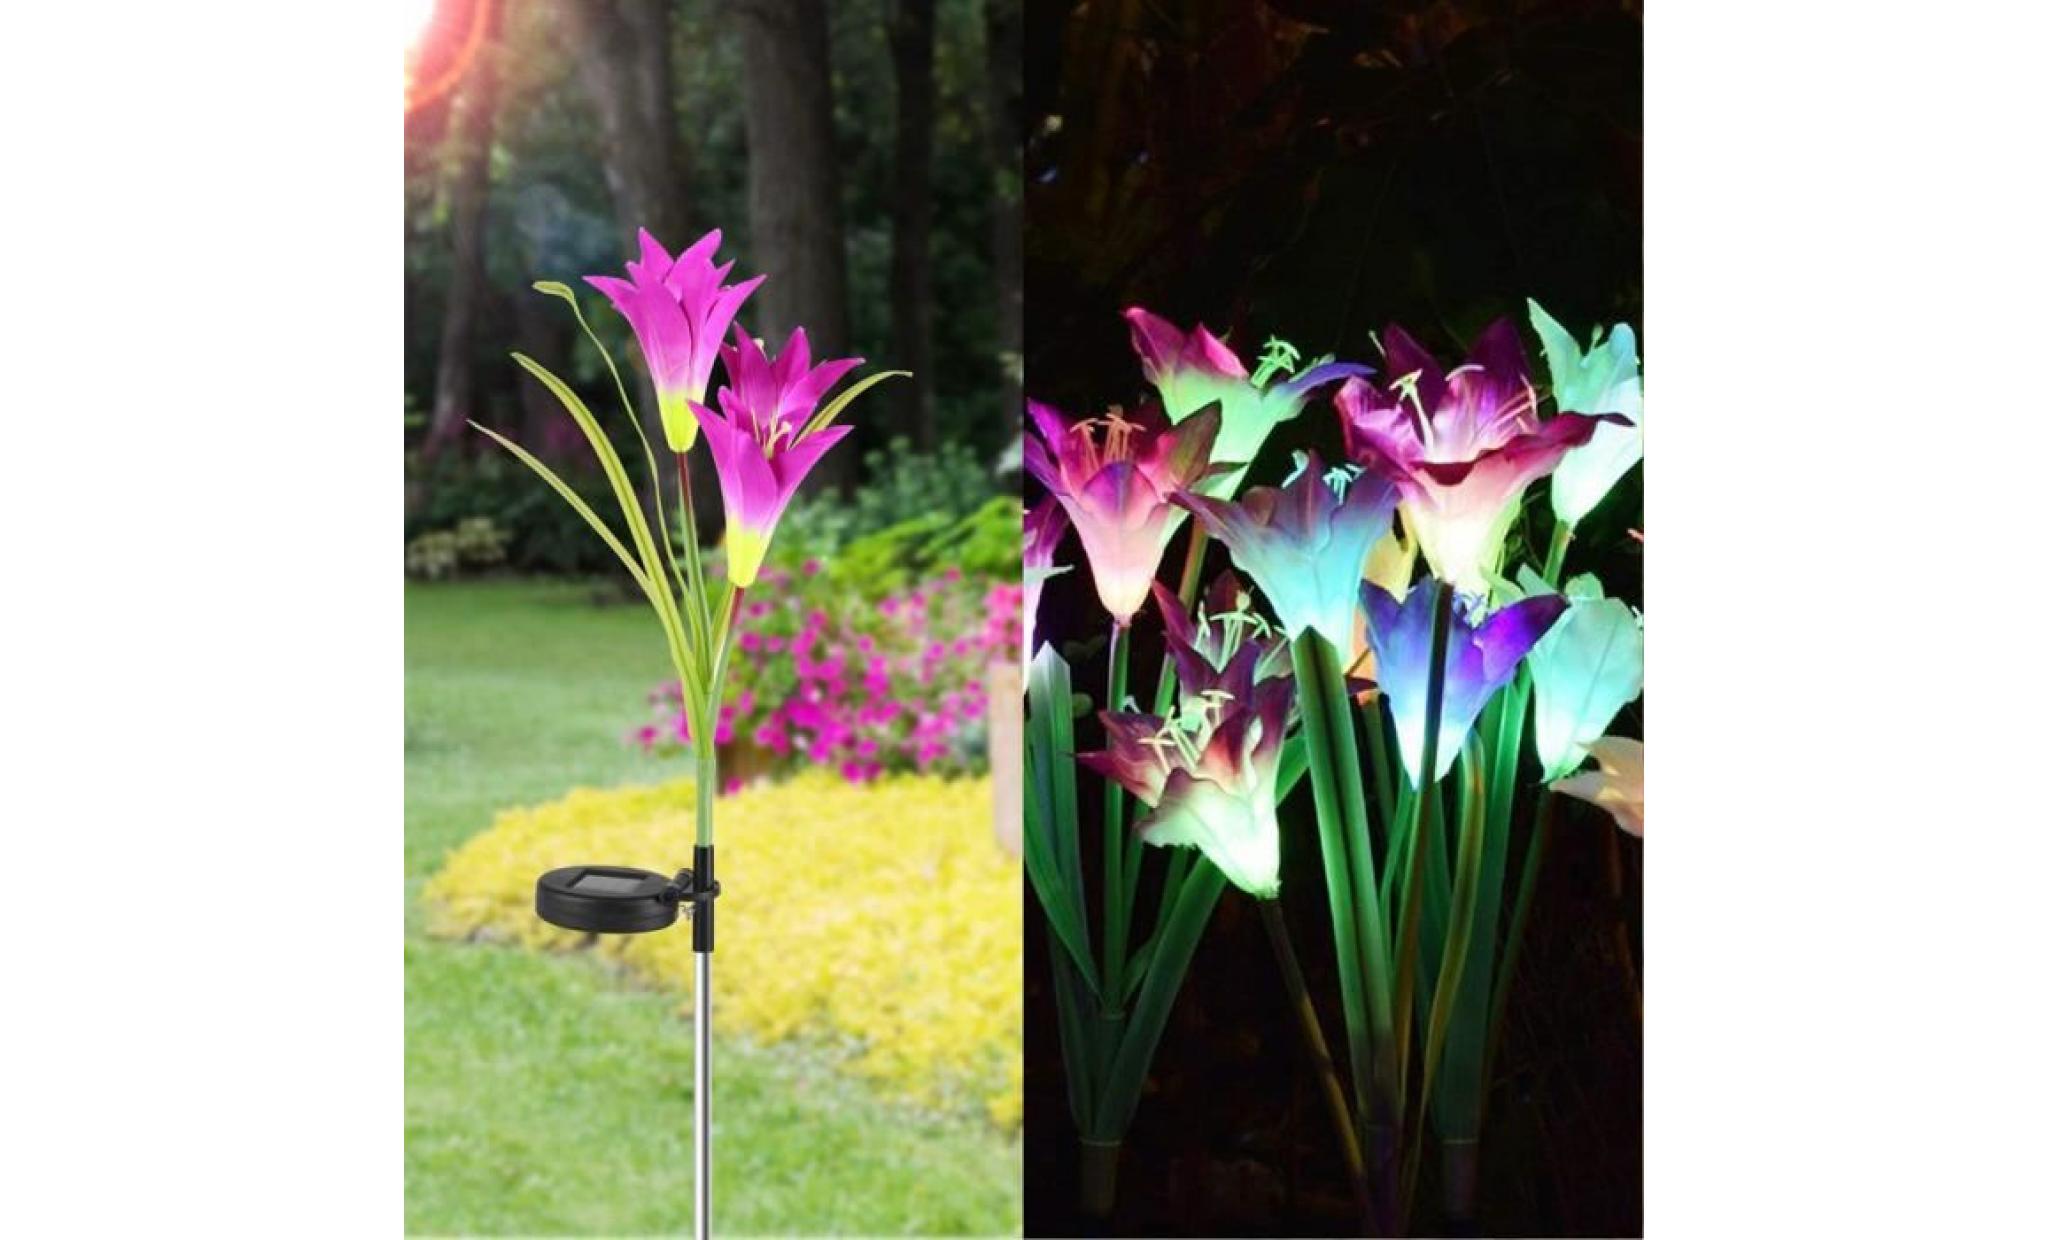 borne solaire 2 pcs fleur de lys jardin solaire actionné pieu lumières lumières fleurs artificielles led lumière #la 130